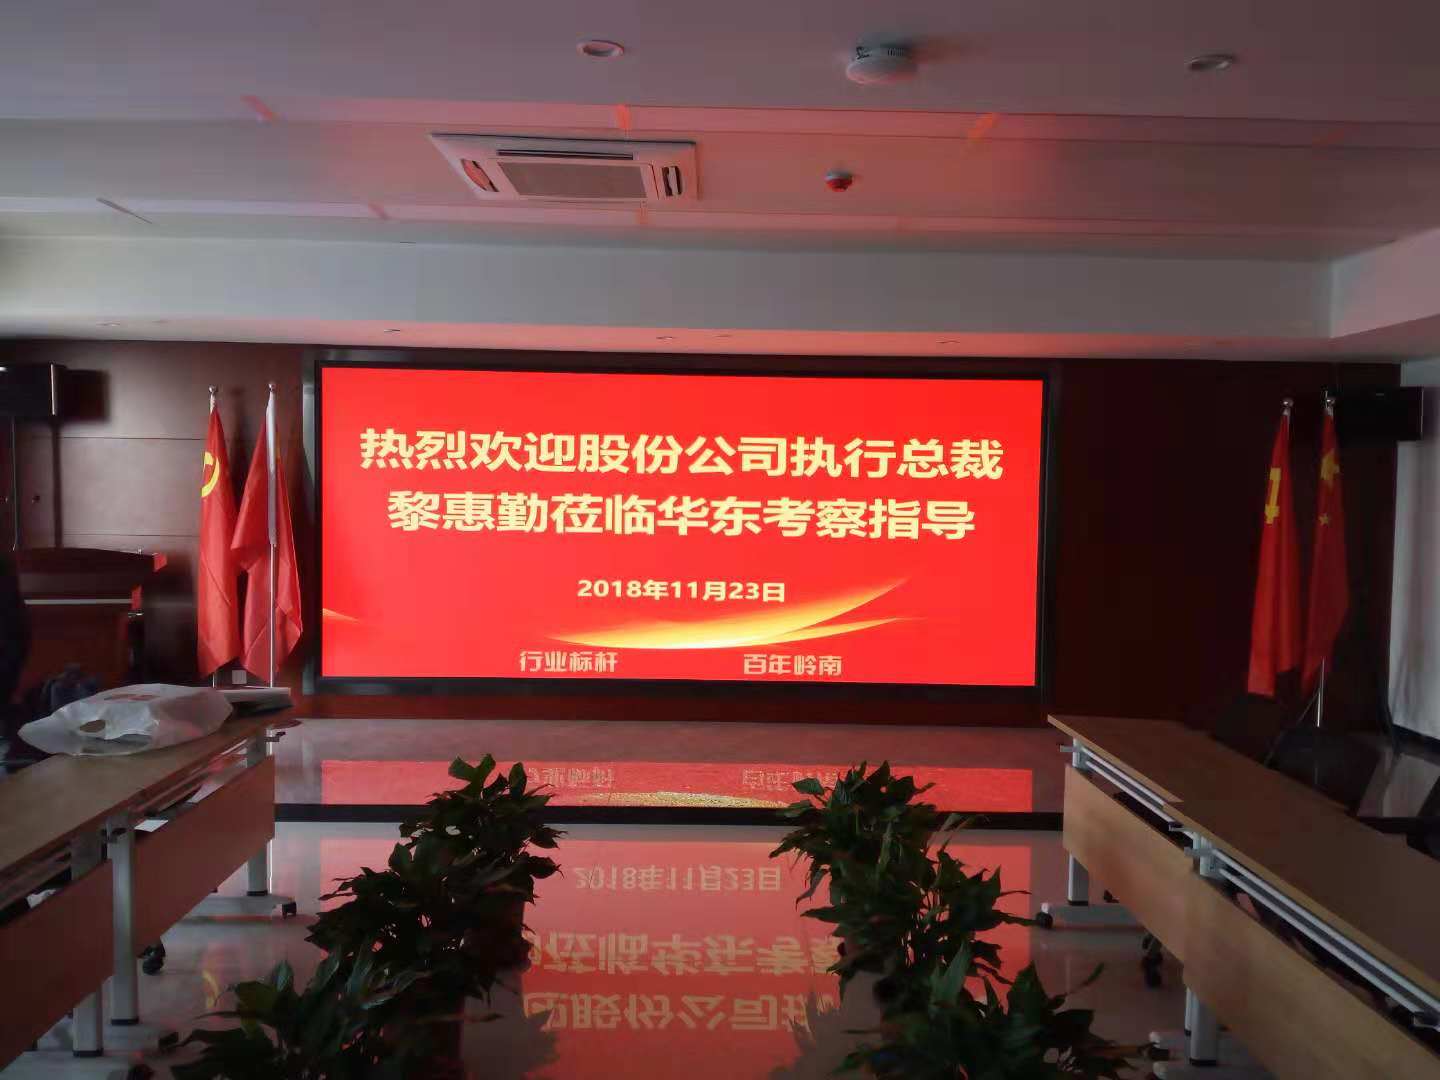 安庆会议大厅LED显示屏产品介绍 服务至上 合肥龙发智能科技供应